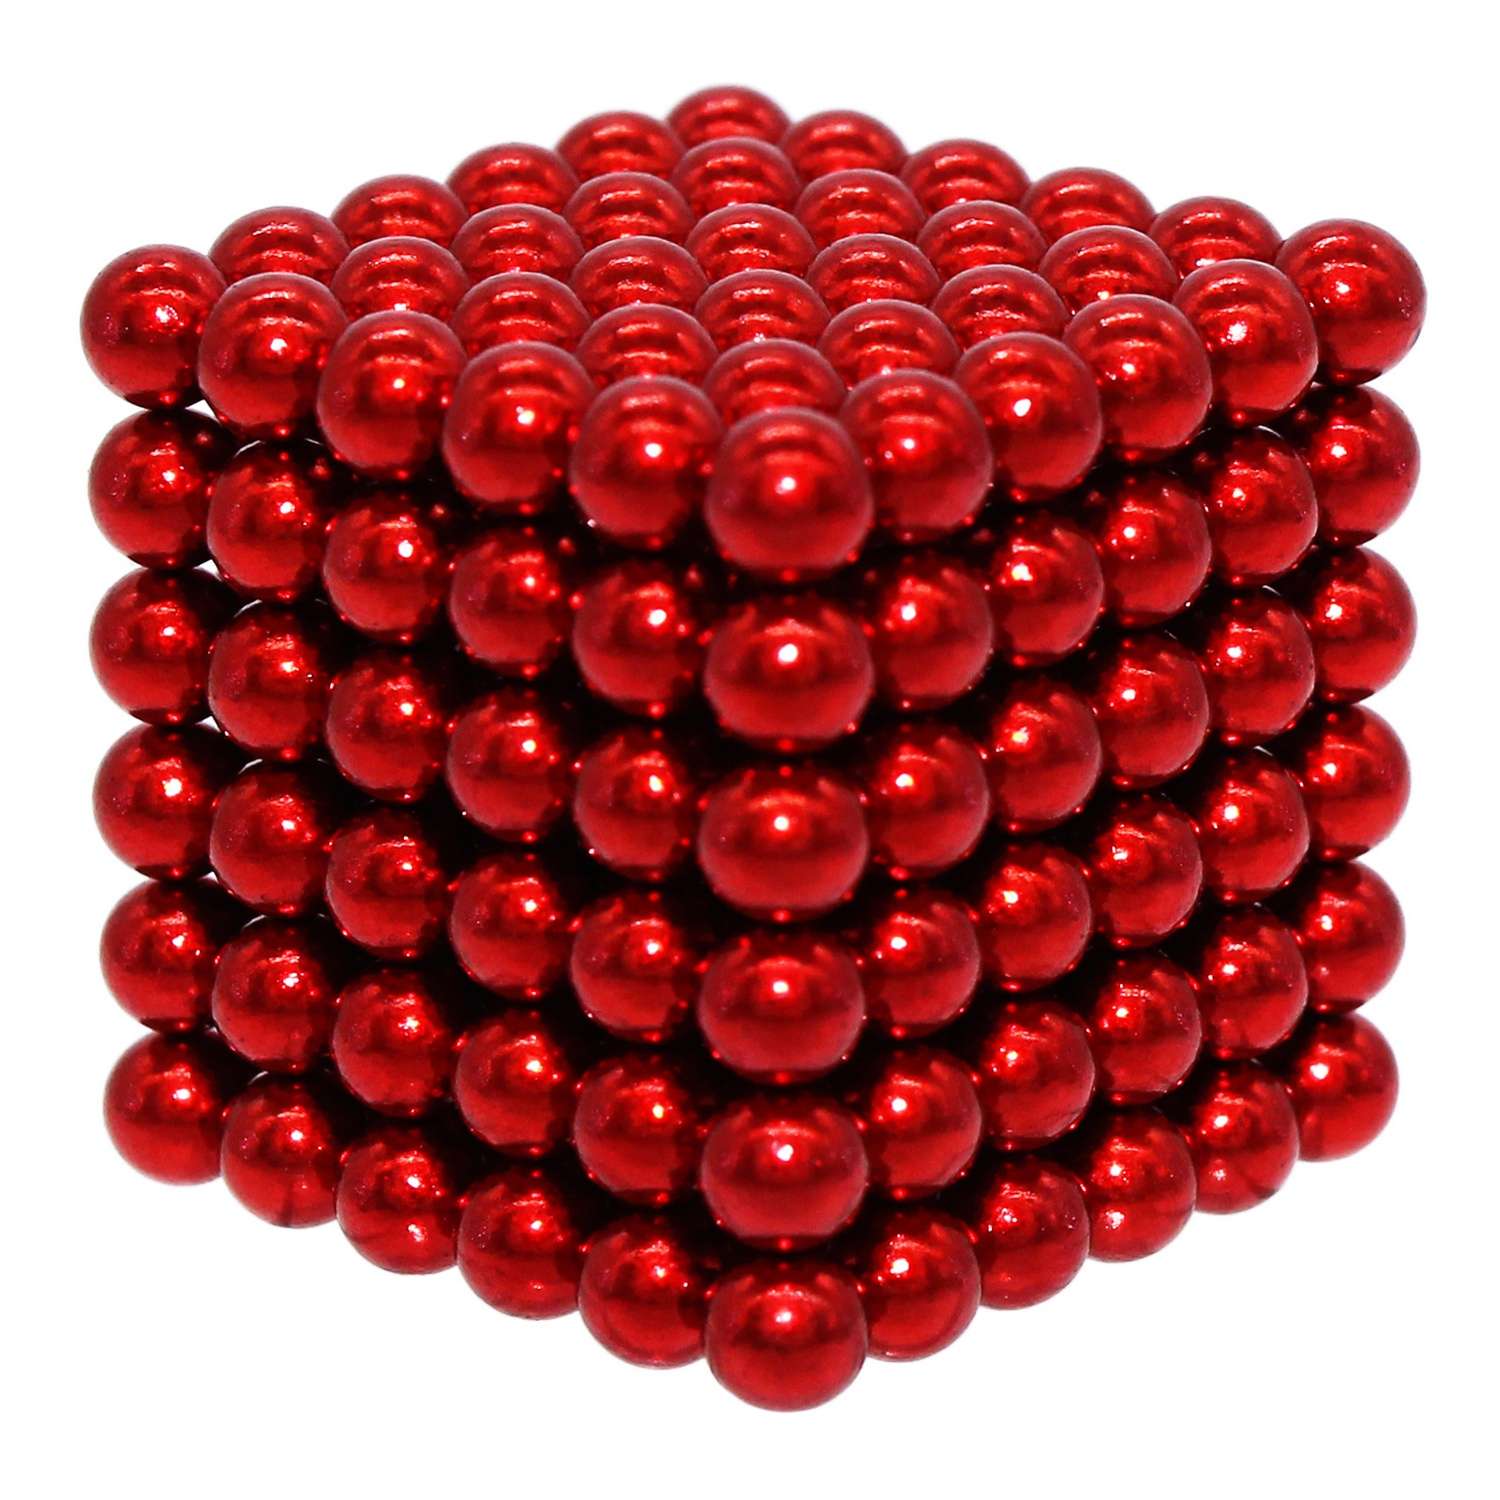 Головоломка магнитная Magnetic Cube красный неокуб 216 элементов - фото 6